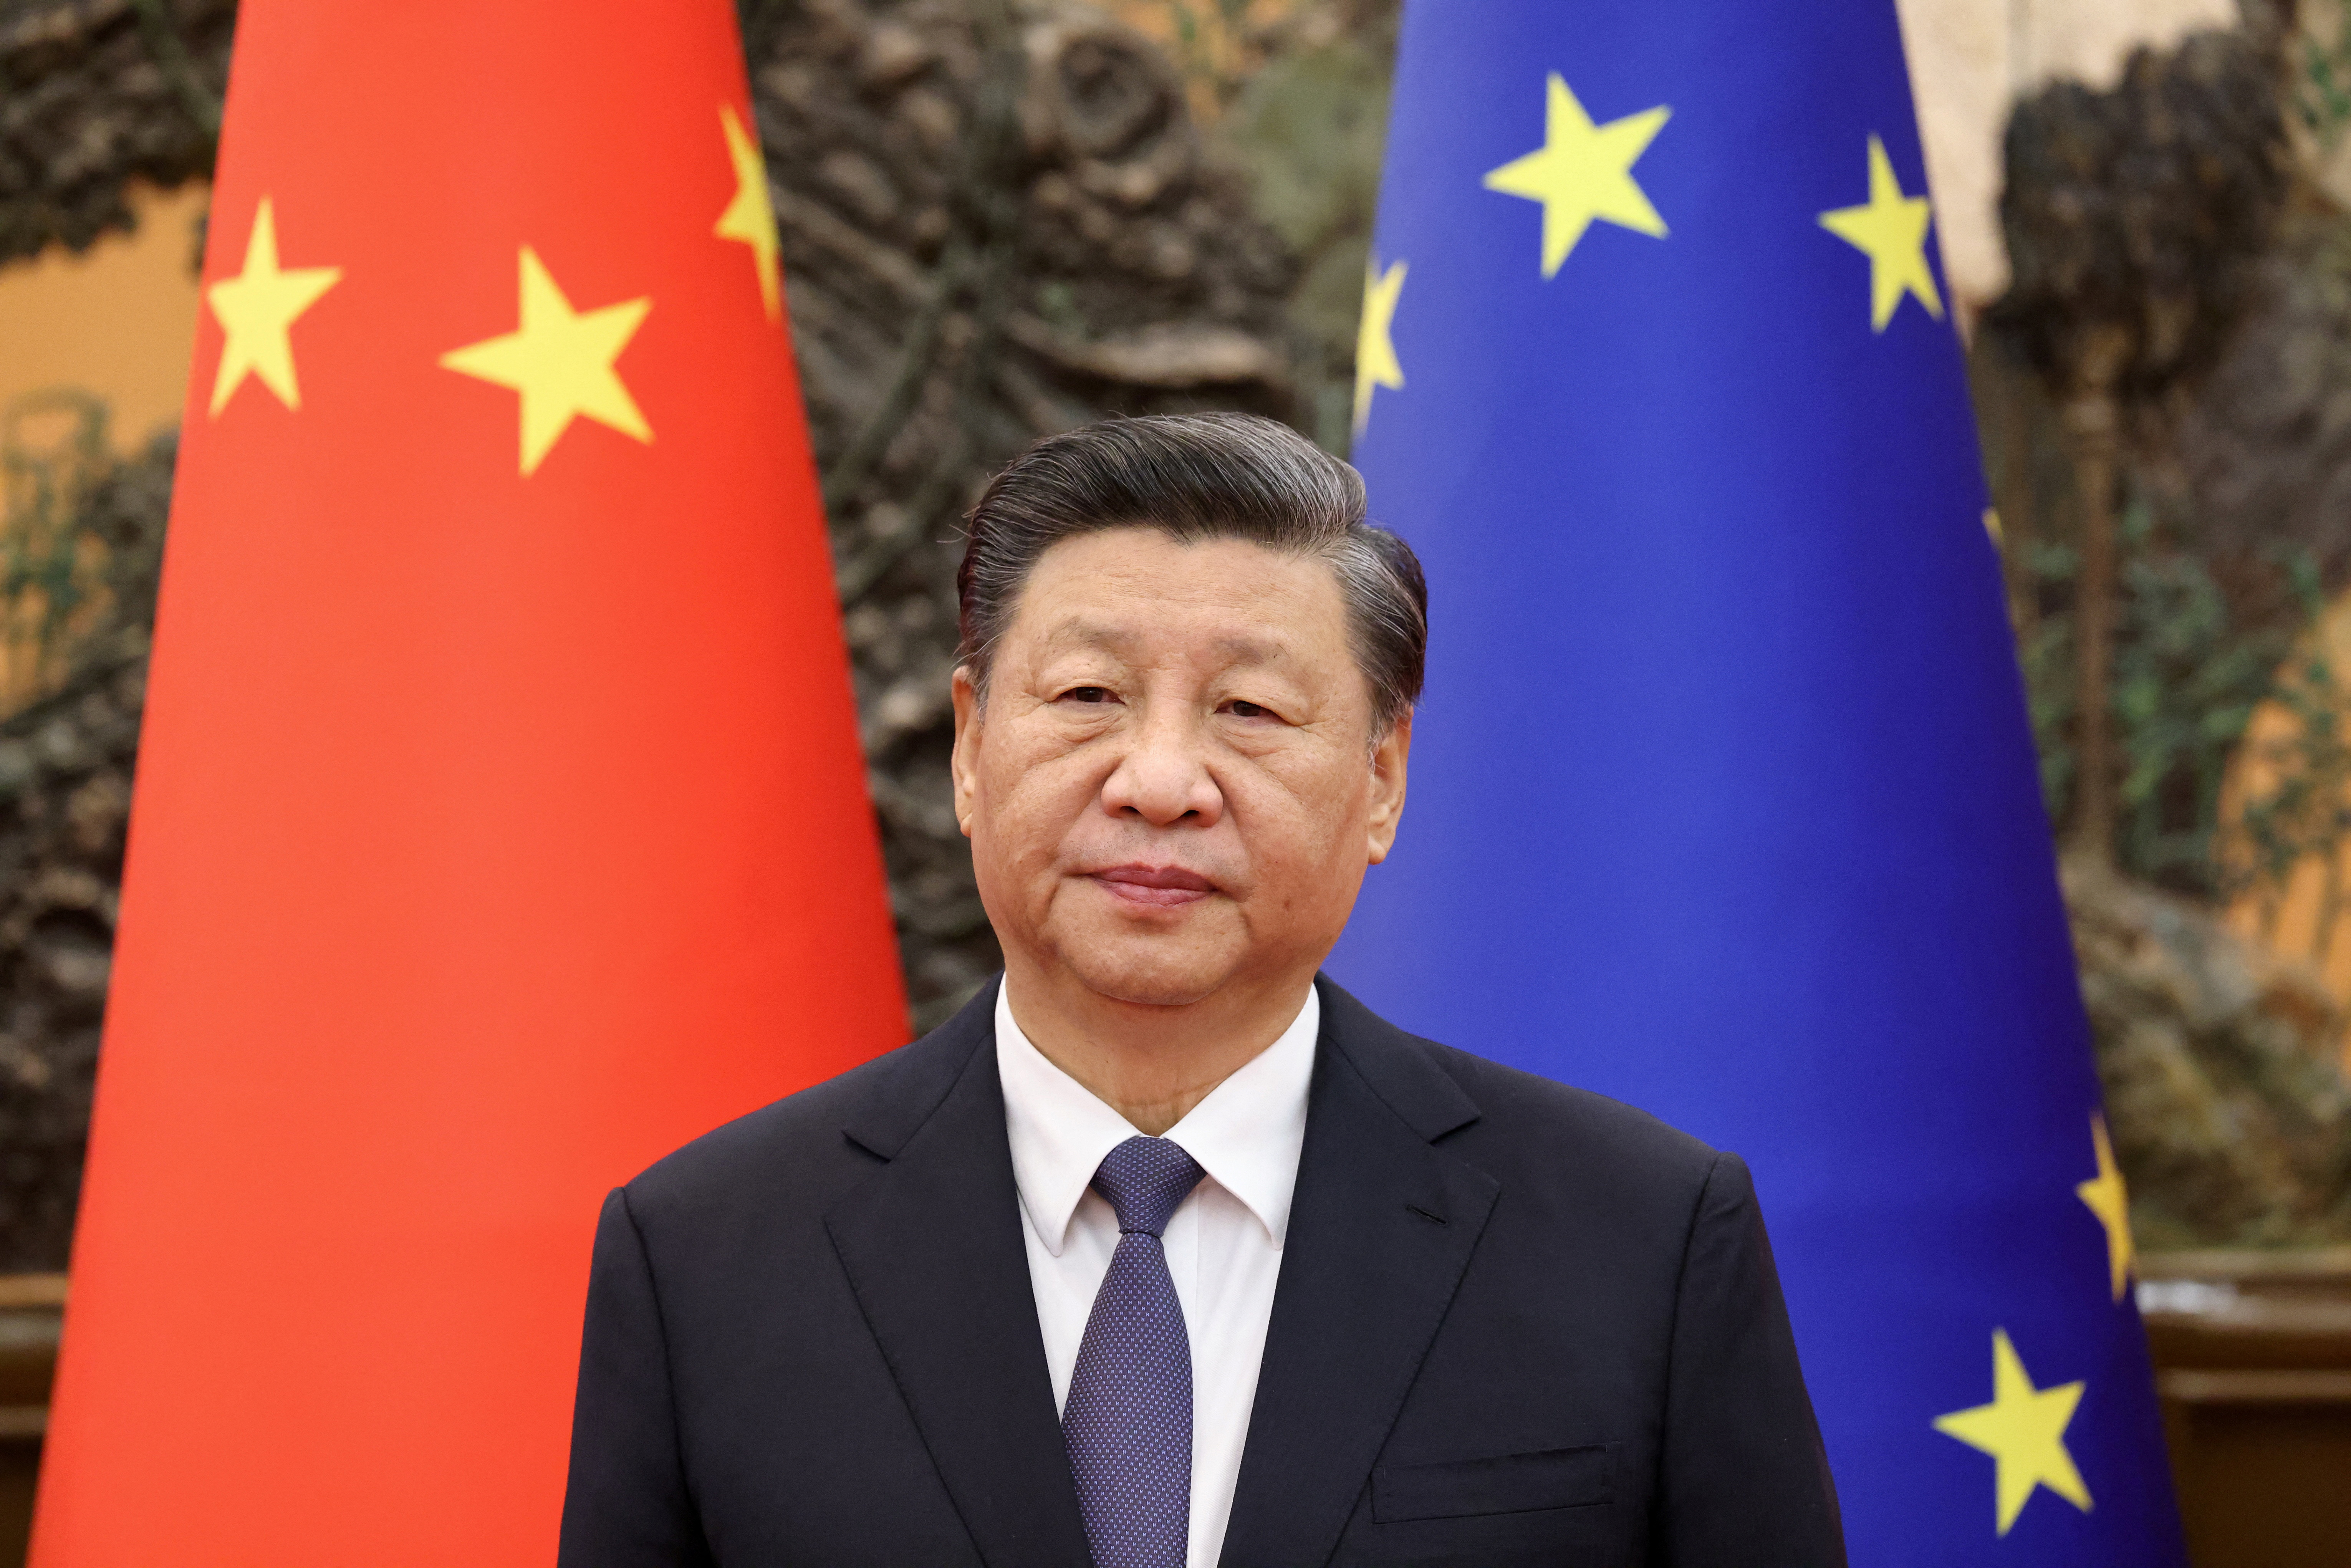 “Resolver la crisis ucraniana a través de medios políticos va en el mejor interés de Europa y en el interés común de todos los países en Eurasia”, dijo Xi, según declaraciones citadas por la televisora. European Union/Handout via REUTERS